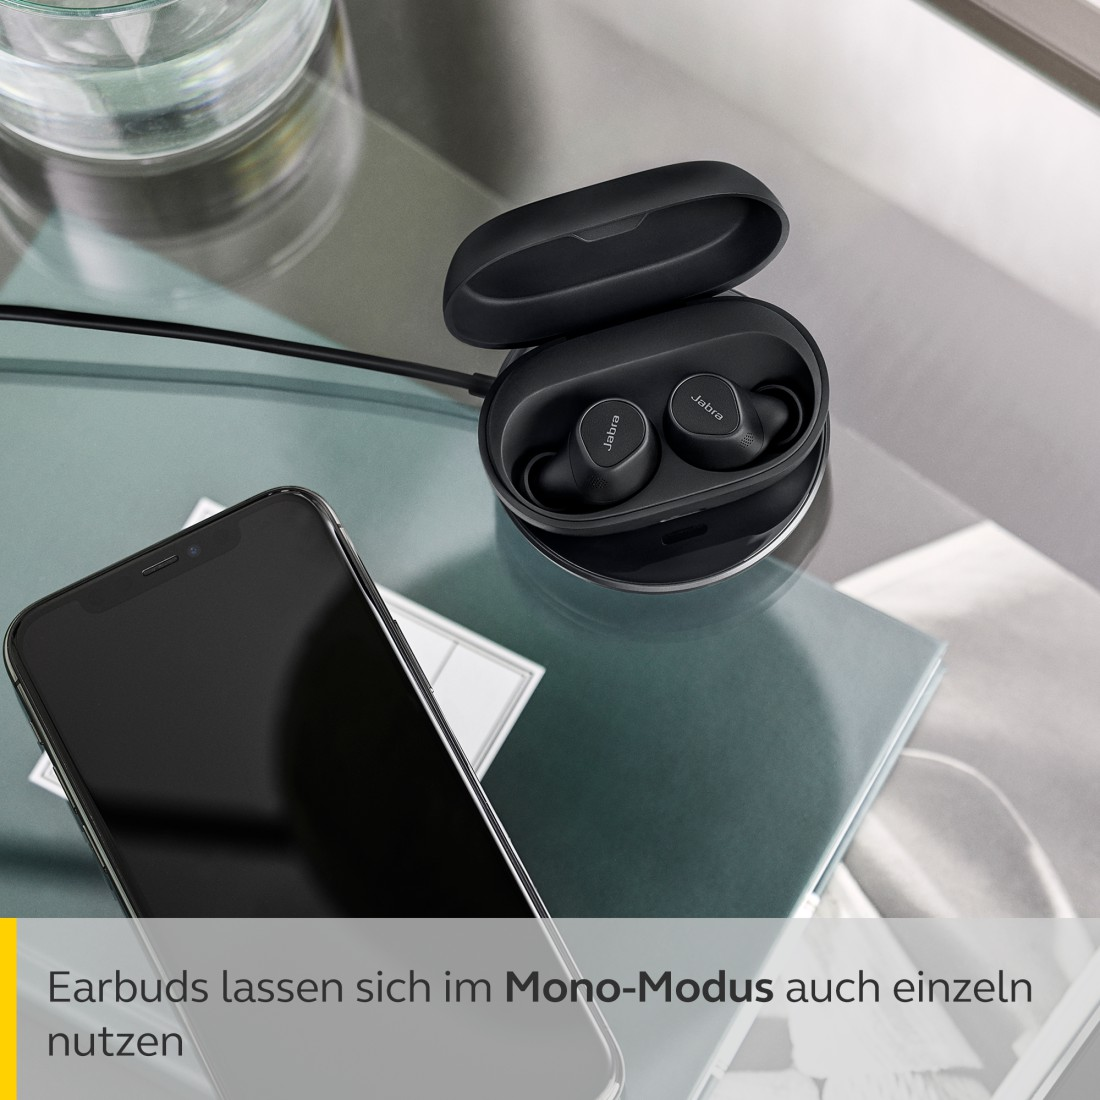 JABRA Elite 7 Pro, ANC, anpassbarem Bluetooth In-ear Kopfhörer mit Schwarz